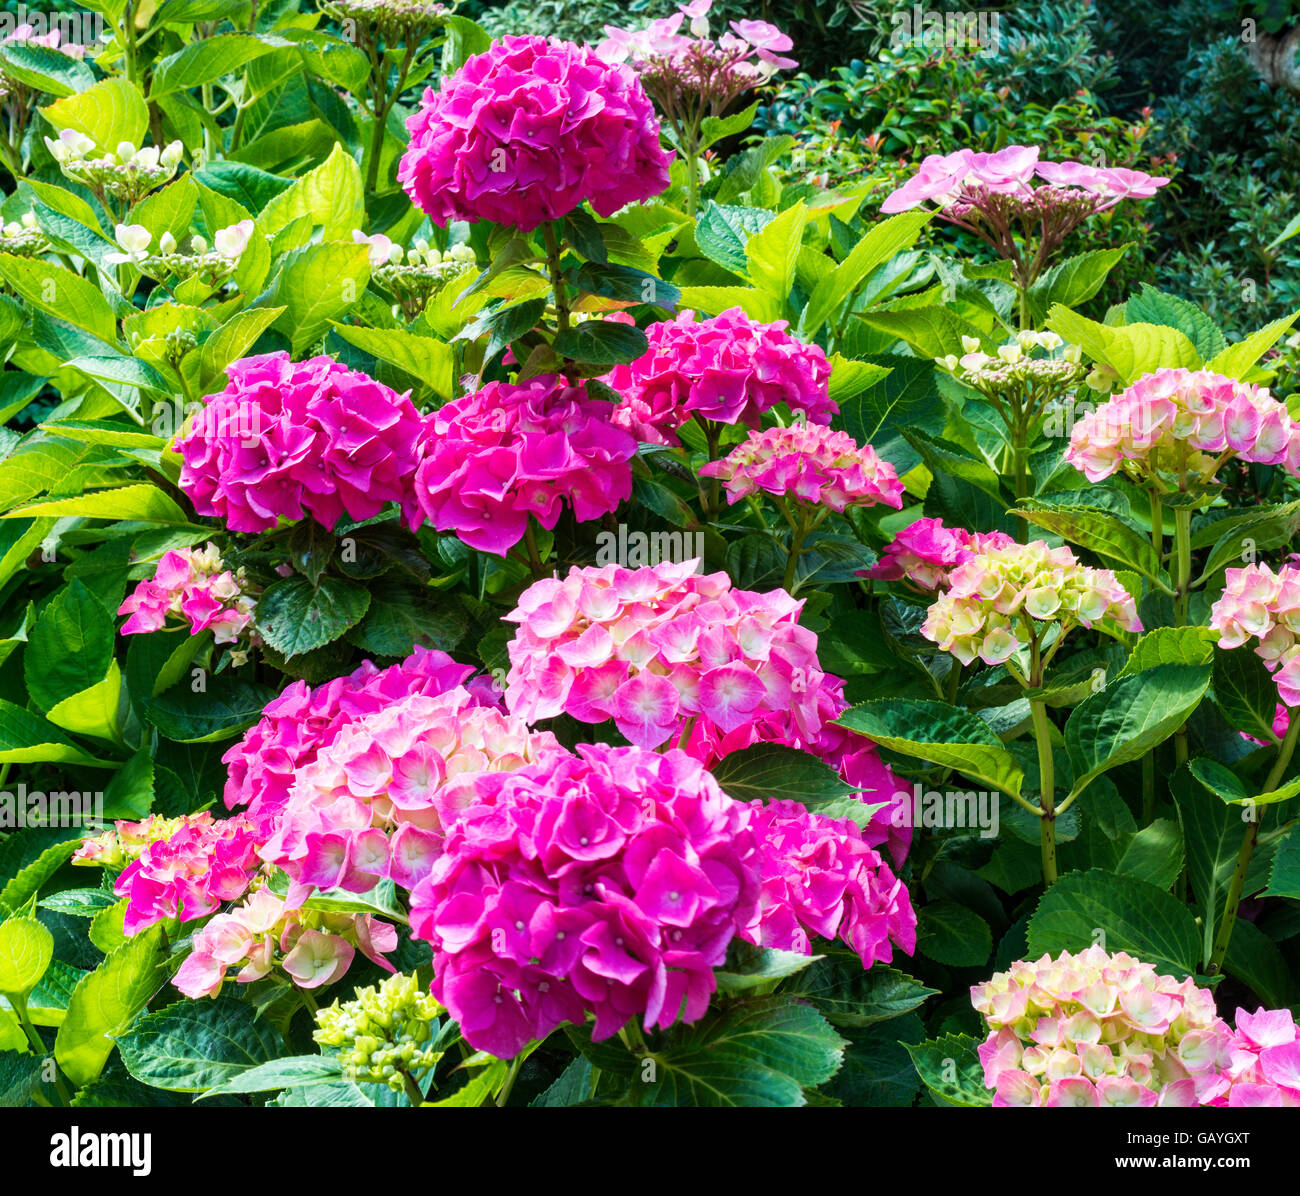 Rosa Hortensie oder Hortensia Blumen im Garten Stockfoto